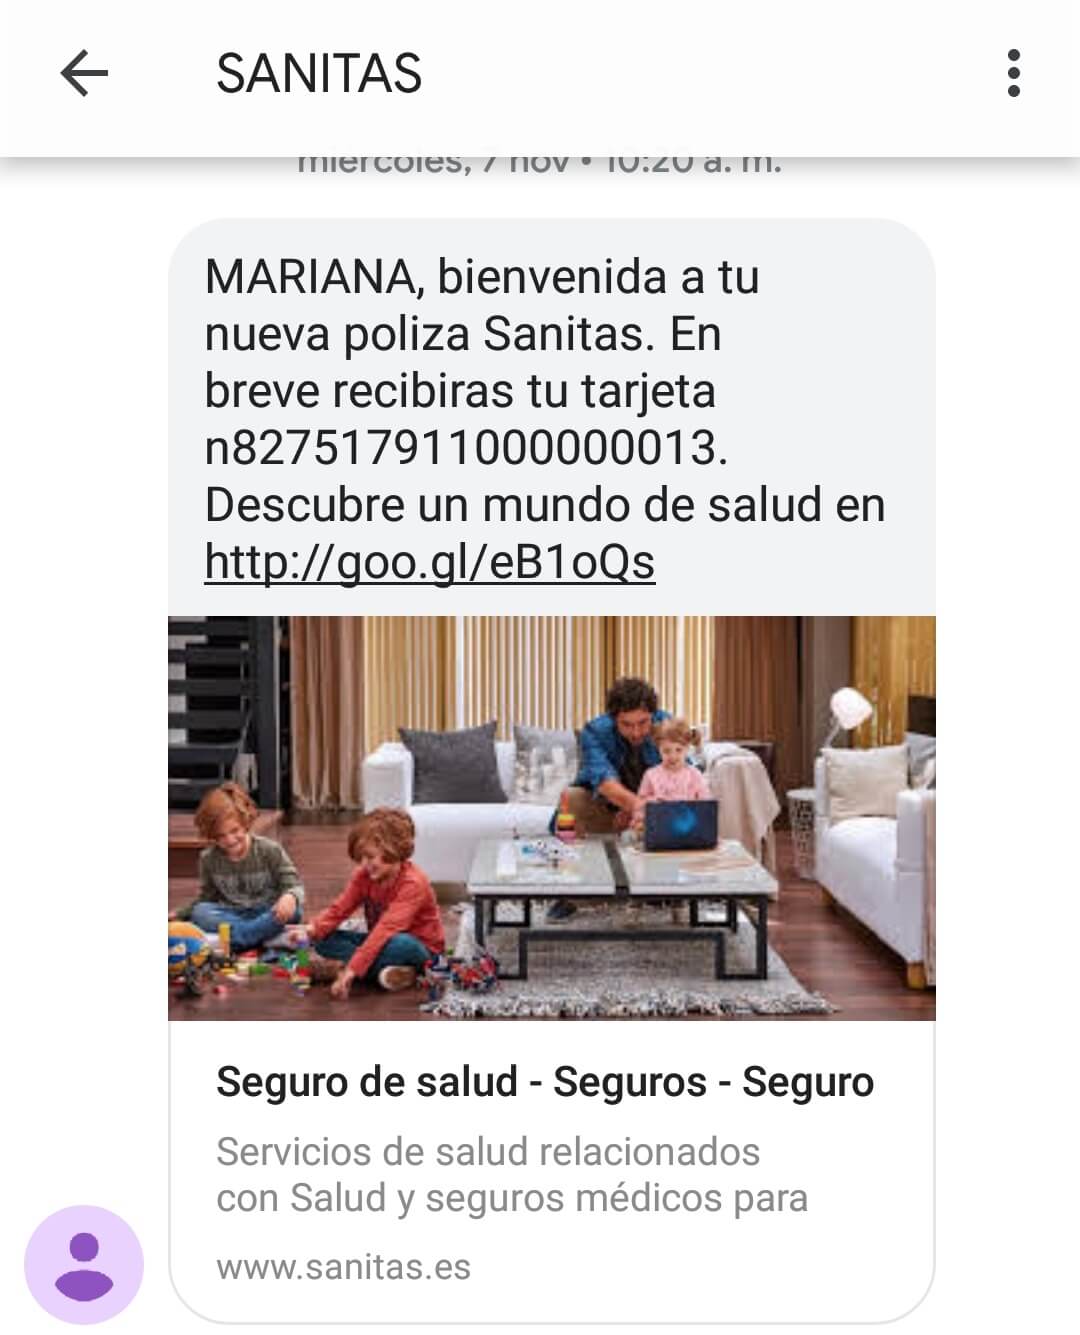 Marketing por sms. Ejemplo de Sanitas.